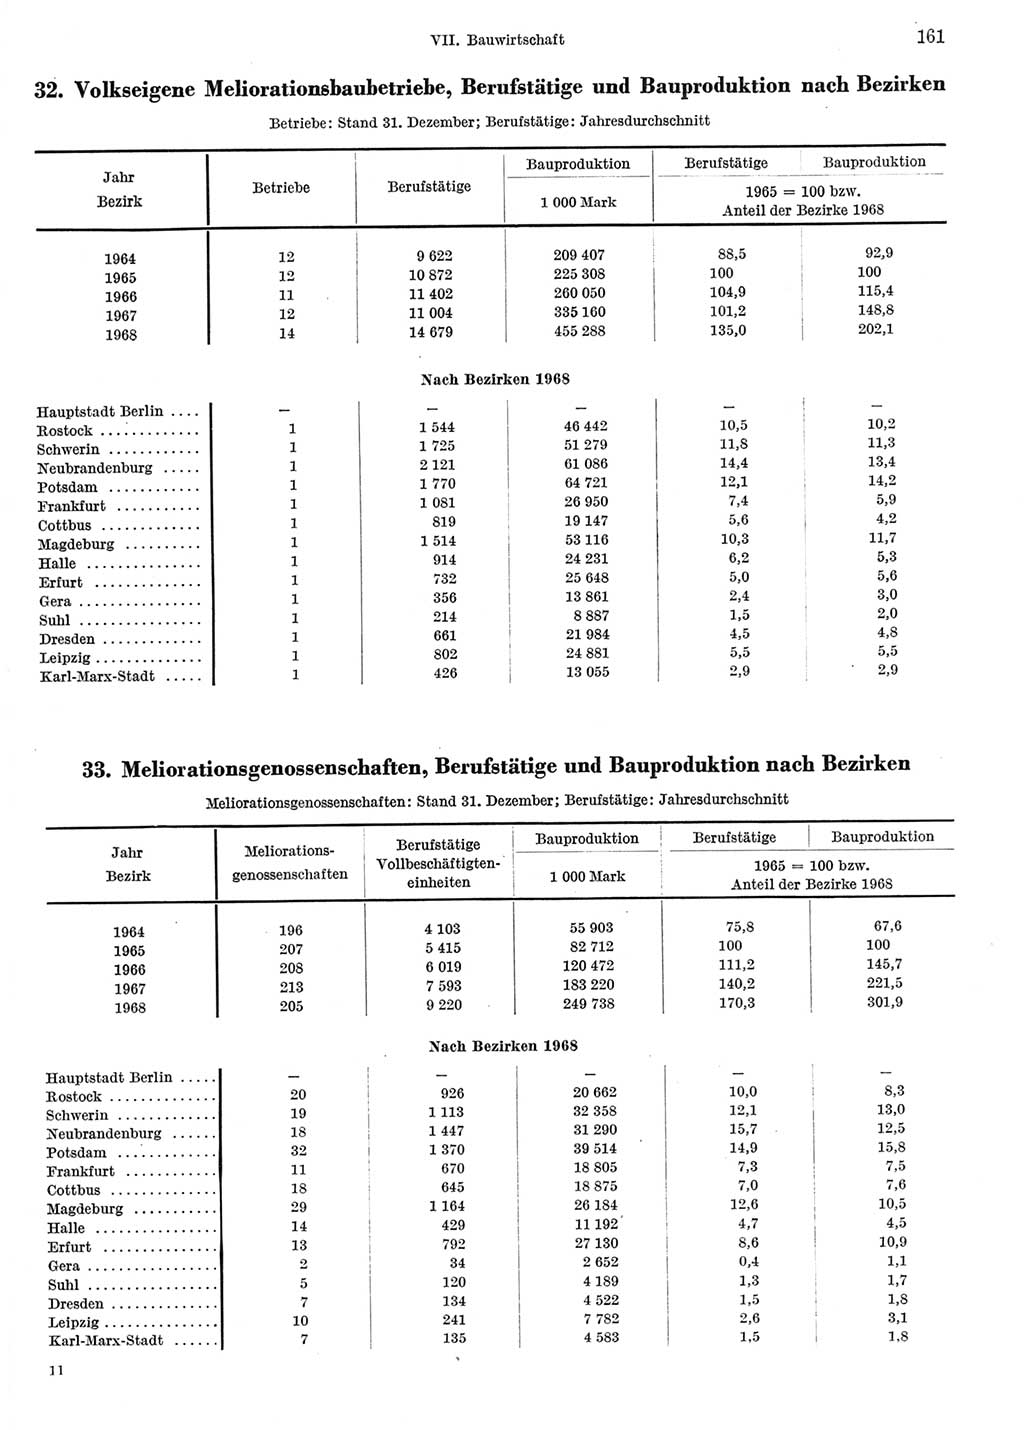 Statistisches Jahrbuch der Deutschen Demokratischen Republik (DDR) 1969, Seite 161 (Stat. Jb. DDR 1969, S. 161)